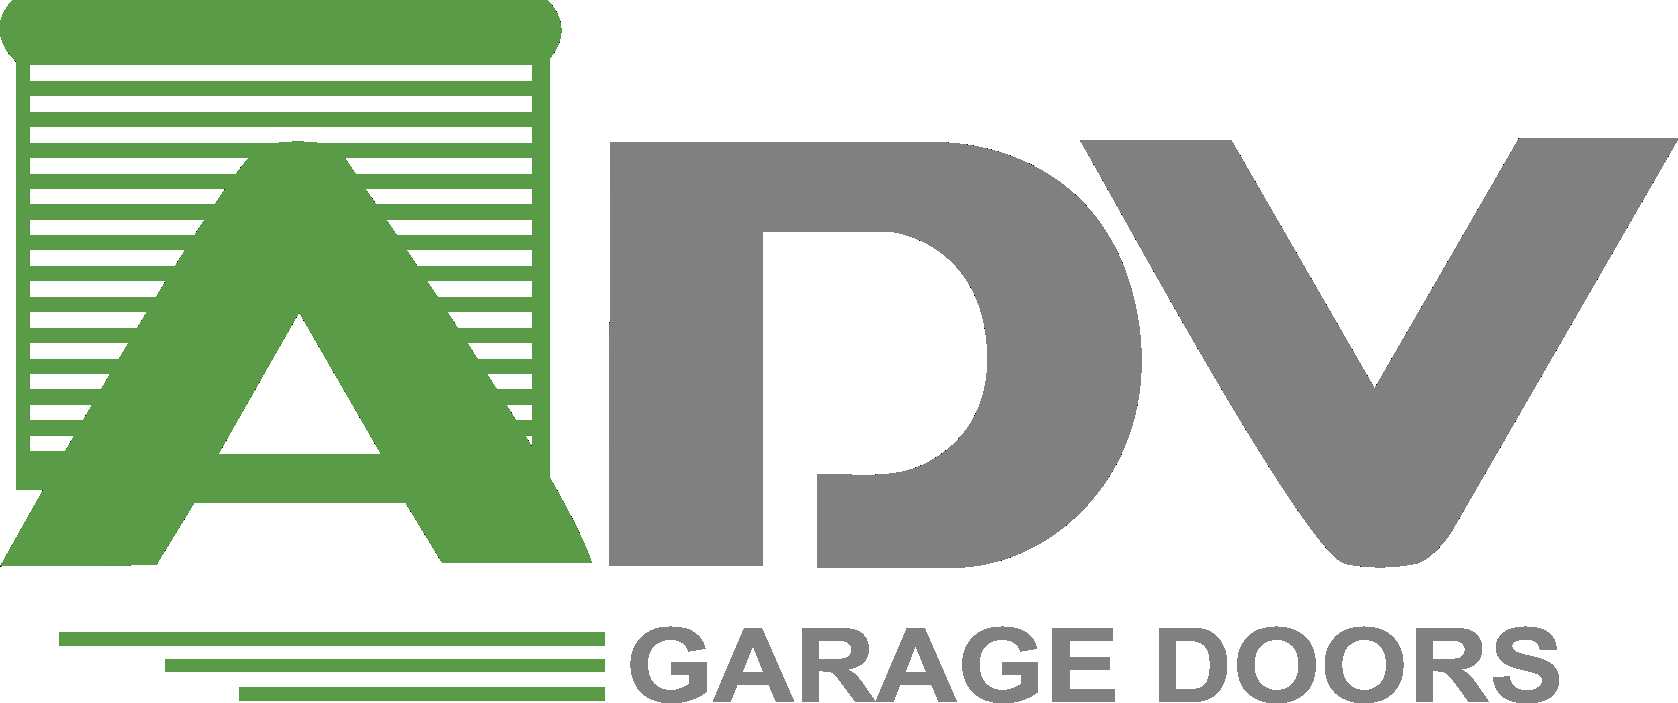 ADV Garage doors